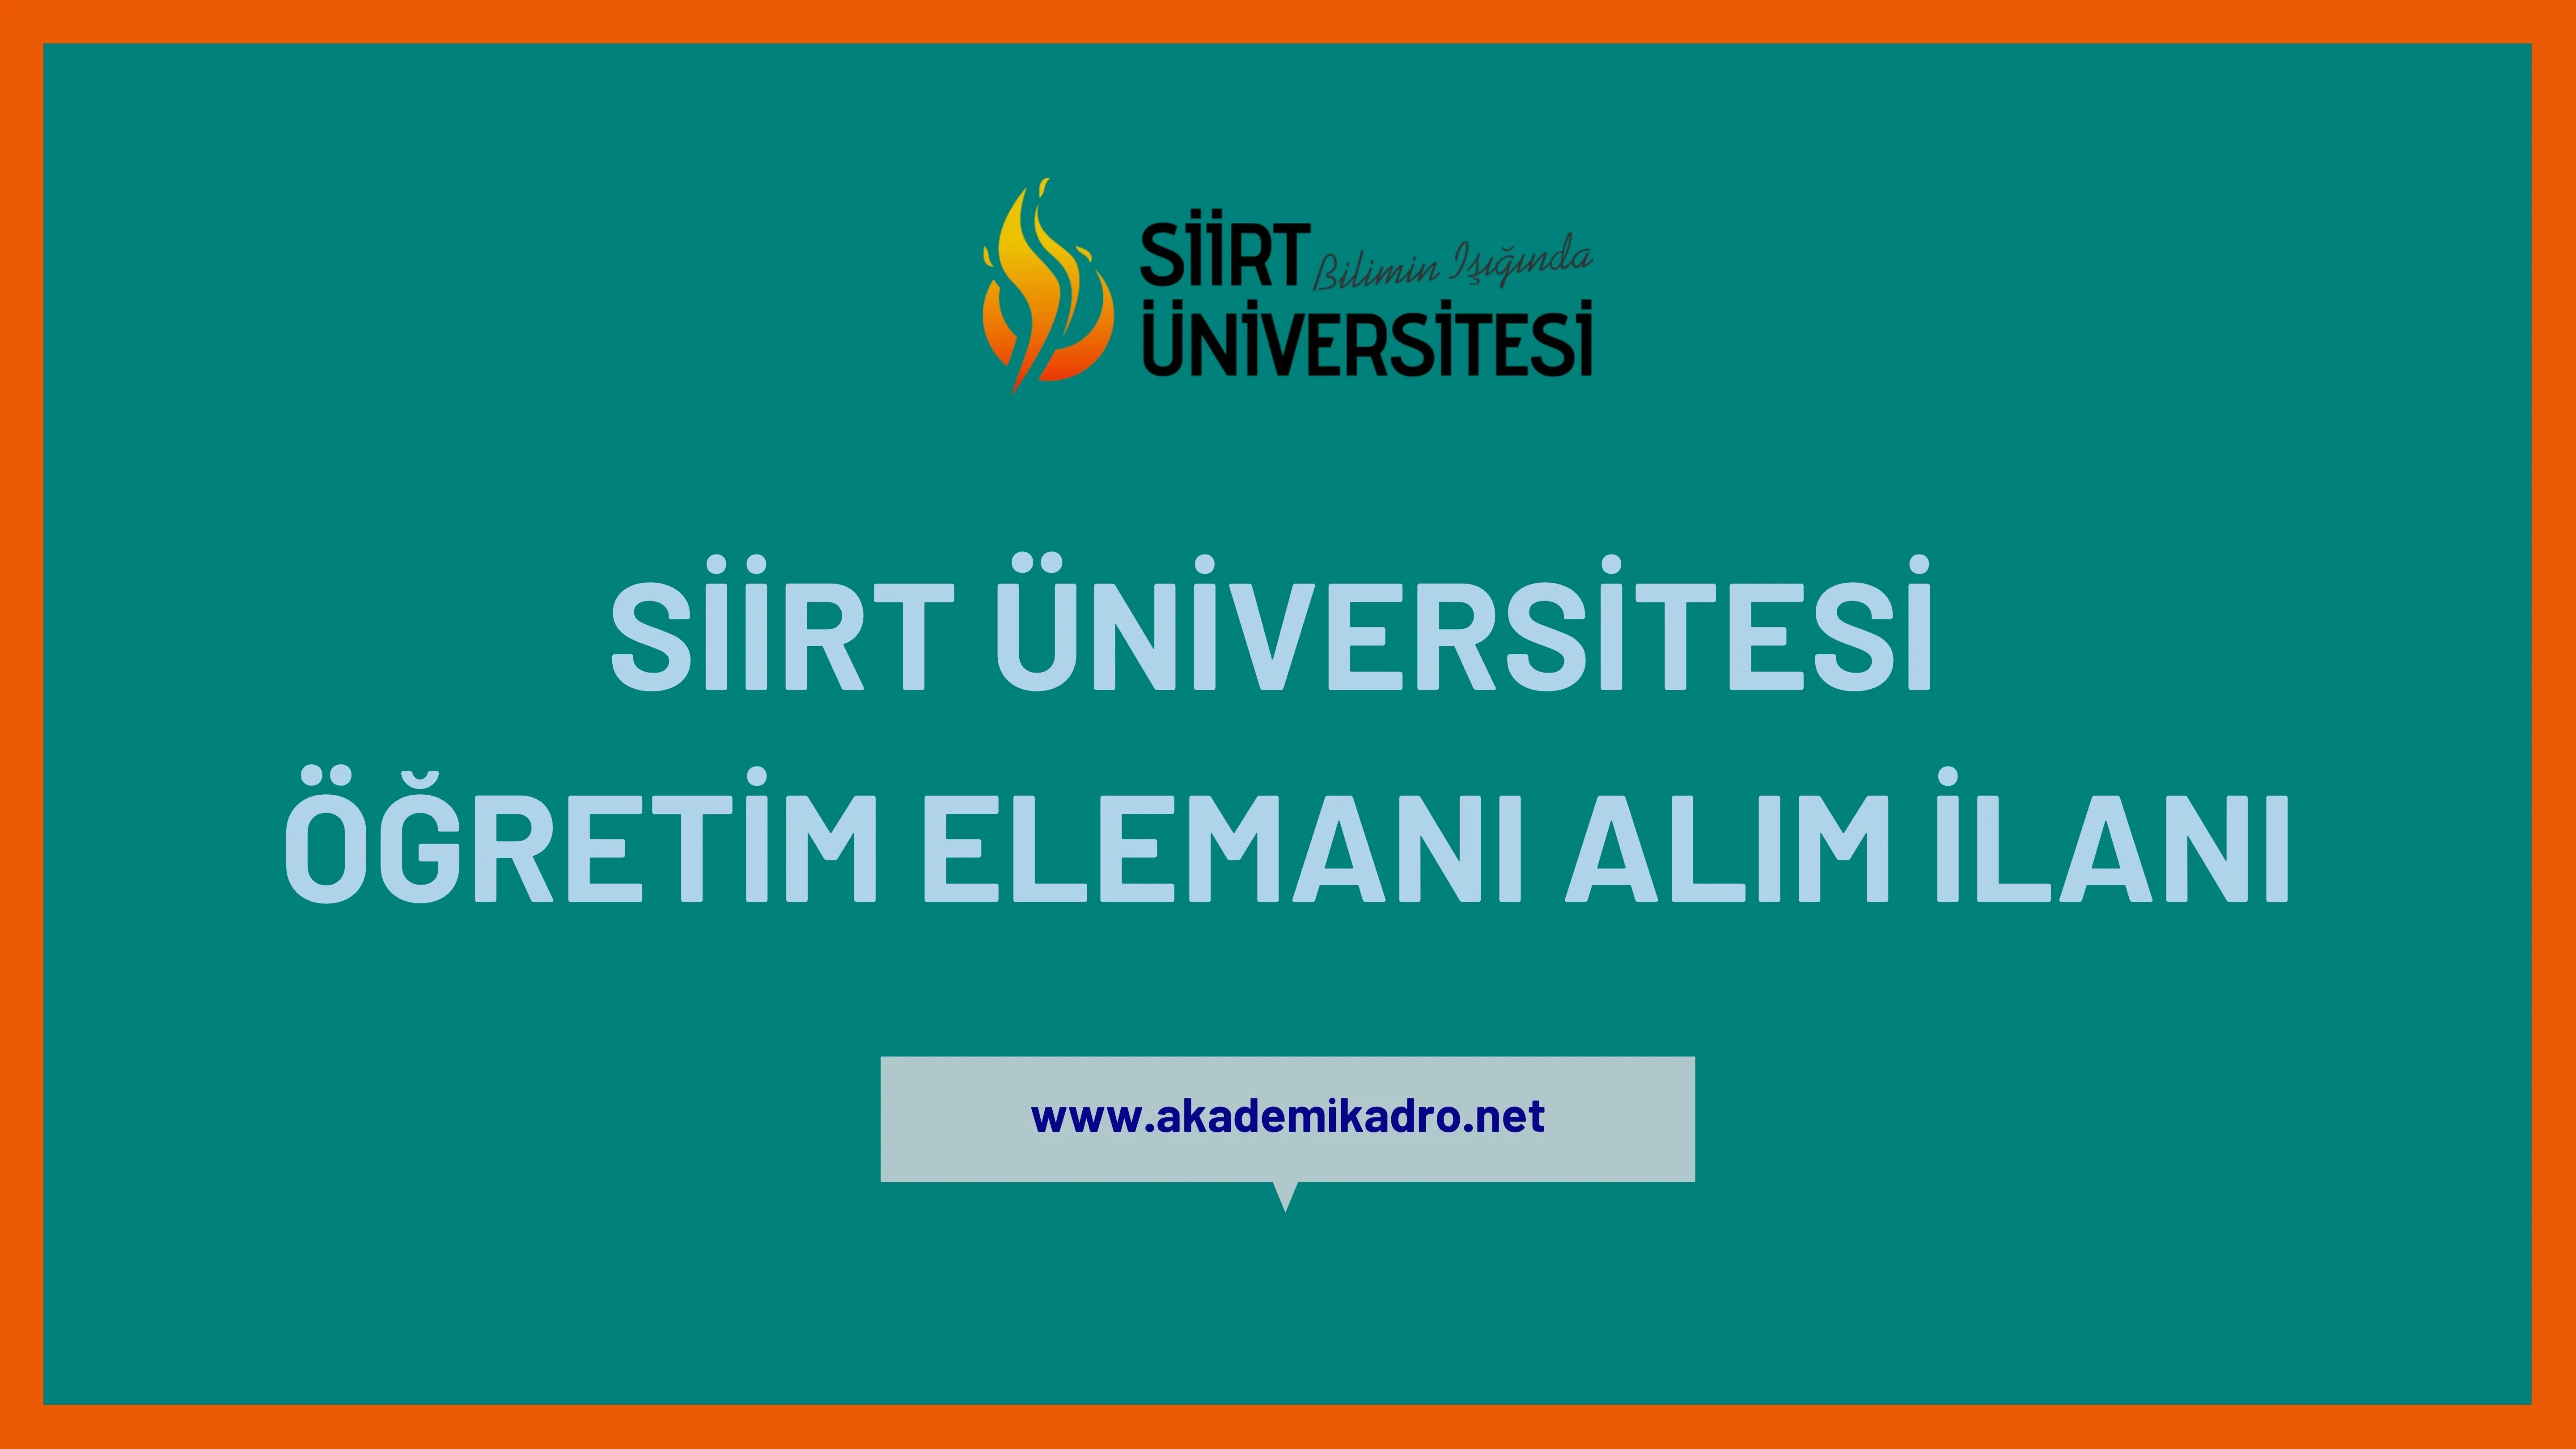 Siirt Üniversitesi 7 Öğretim görevlisi, 6 Araştırma görevlisi ve 18 öğretim üyesi alacaktır.